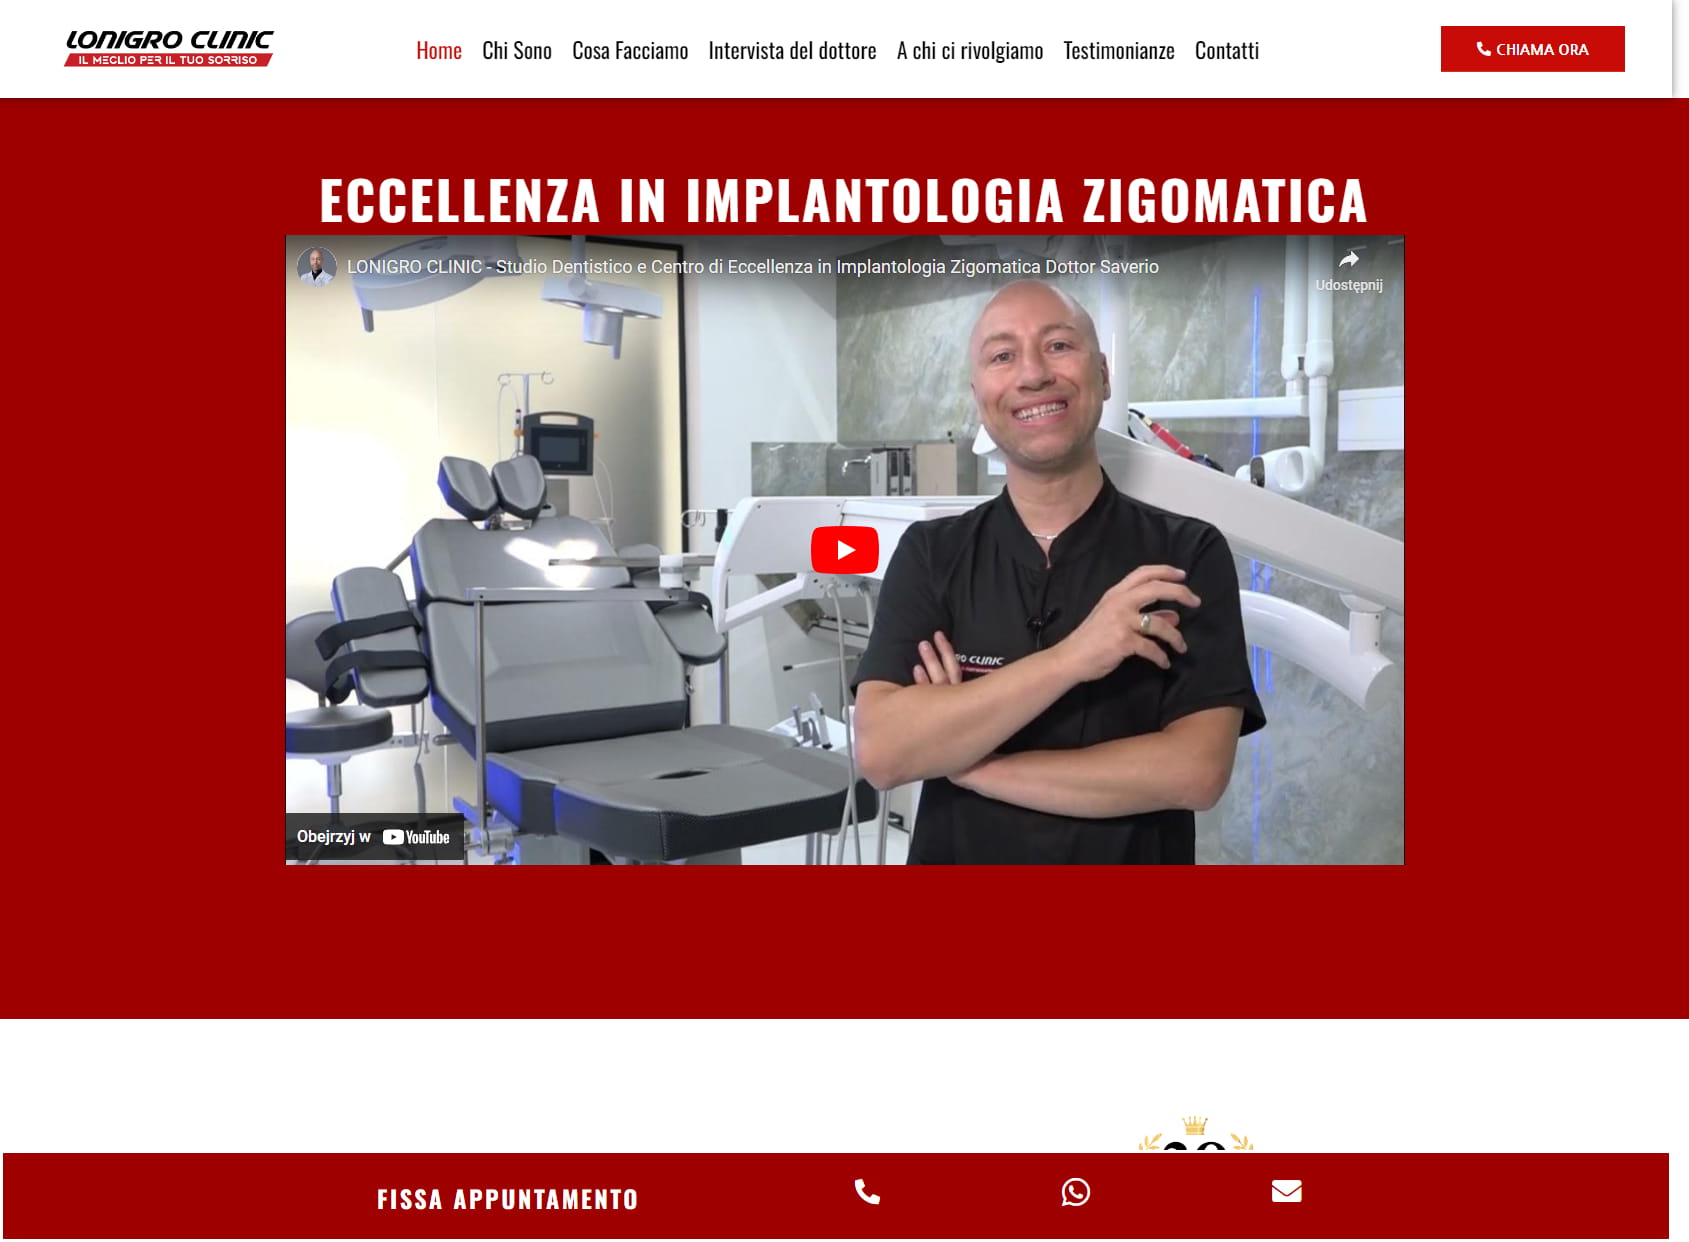 LONIGRO CLINIC - Studio Dentistico e Centro di Eccellenza in Implantologia Zigomatica Dottor Saverio Lonigro